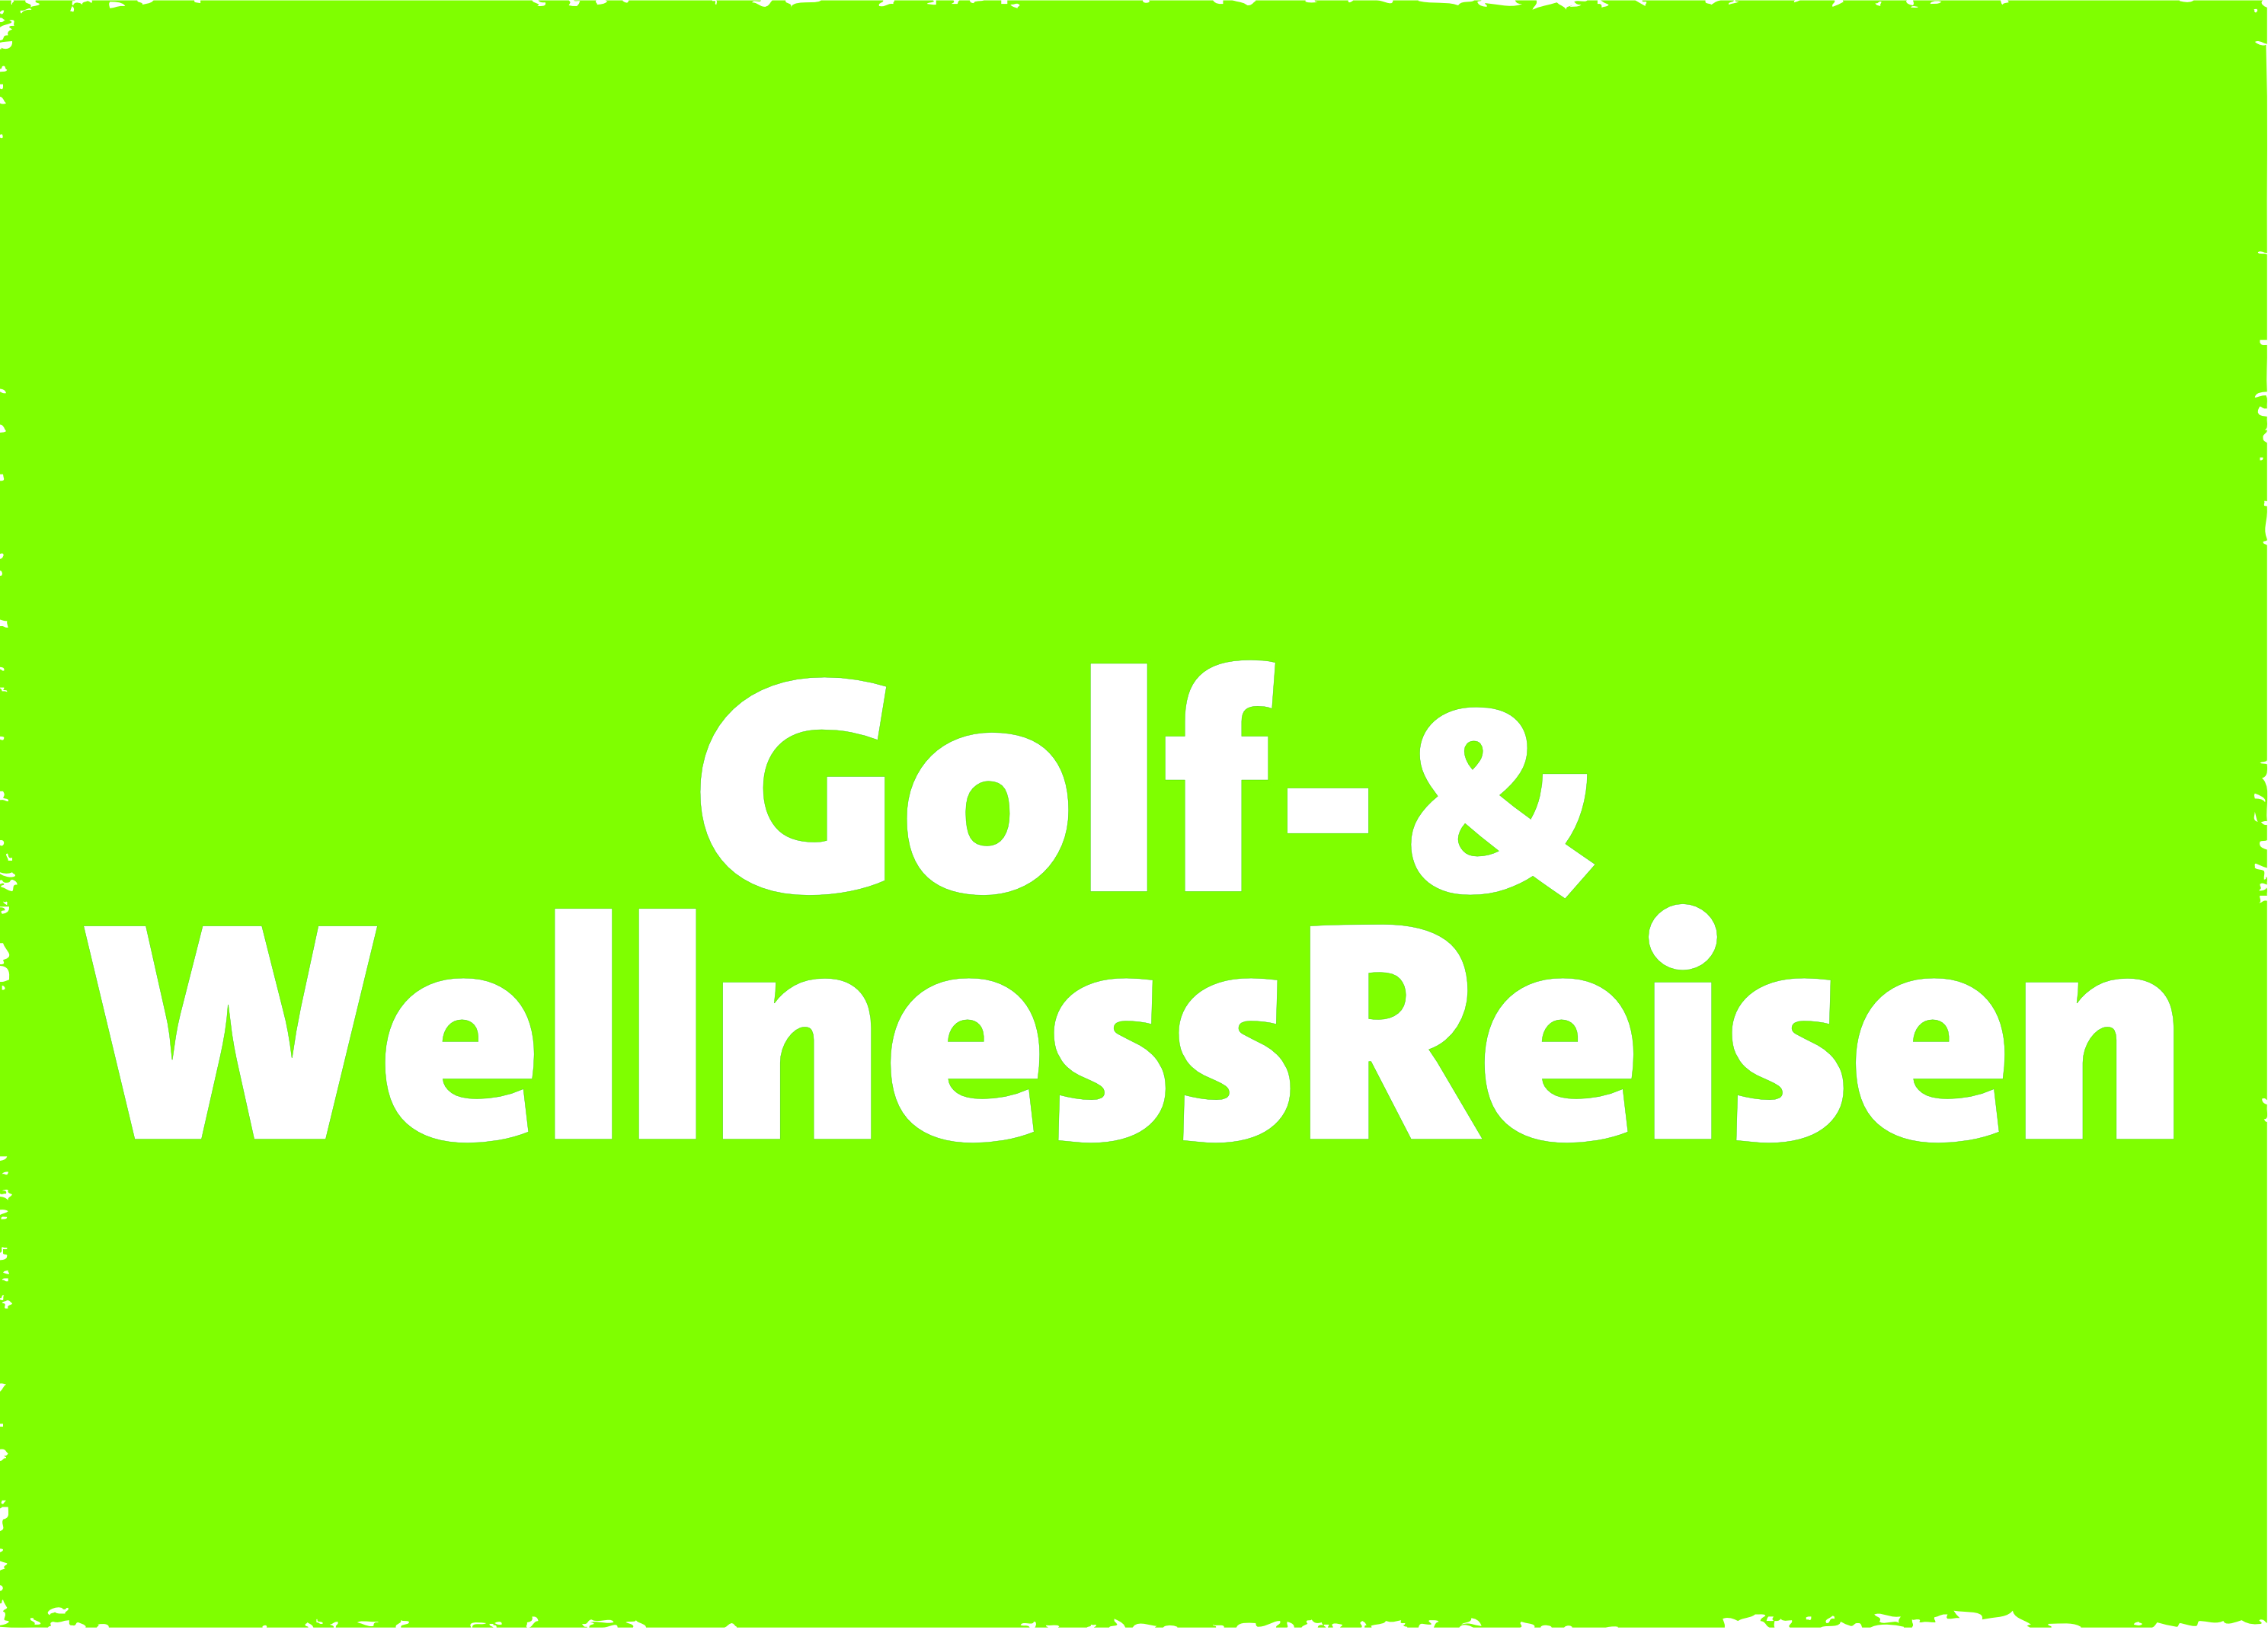 Golf- & WellnessReisen 2024